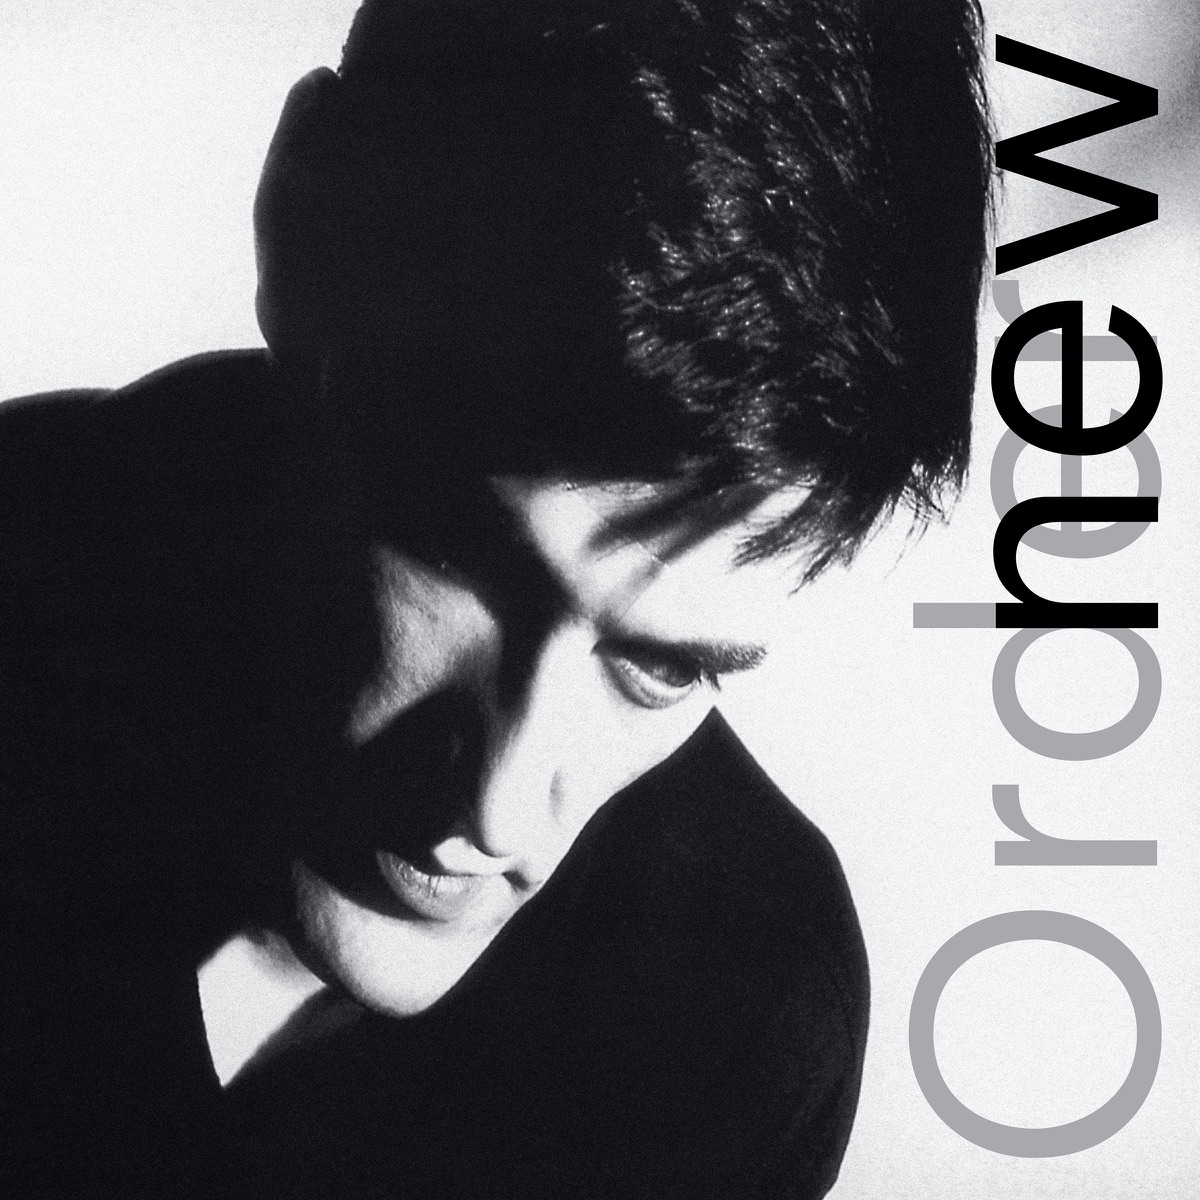 #UnDíaComoHoy hace 39 años, salió a luz pública ‘Low-Life’, el tercer álbum de estudio de #NewOrder.